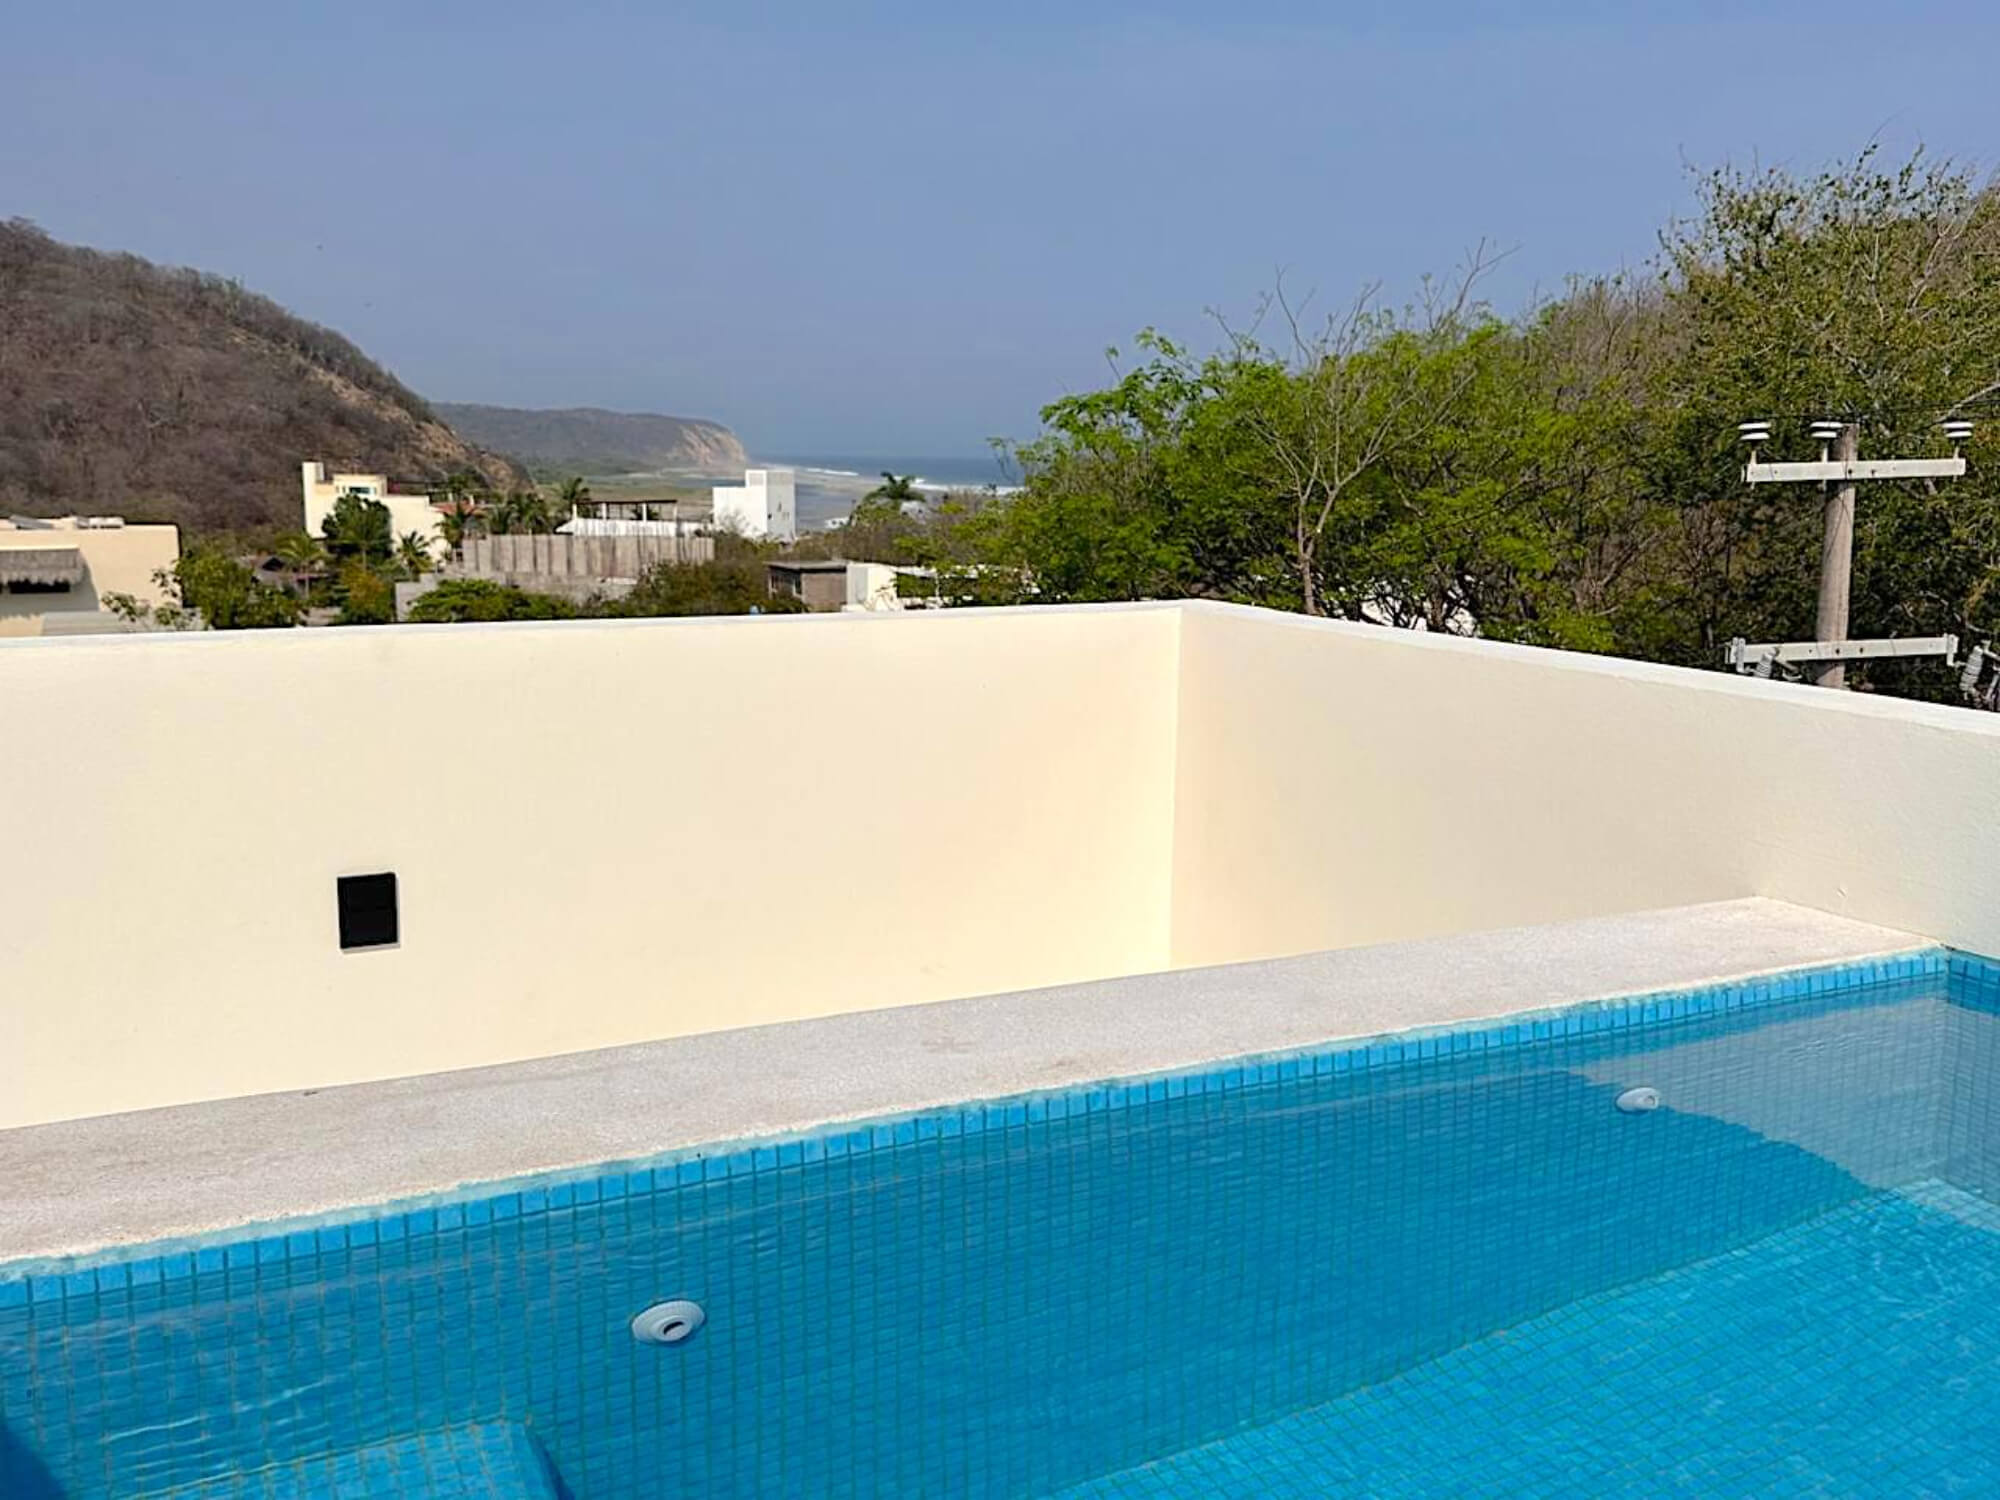 Villa con terraza vista al mar, elevador, panel solar, alberca privada, terreno de 780 m2, Residencial Conejos, comunidad con acceso al mar